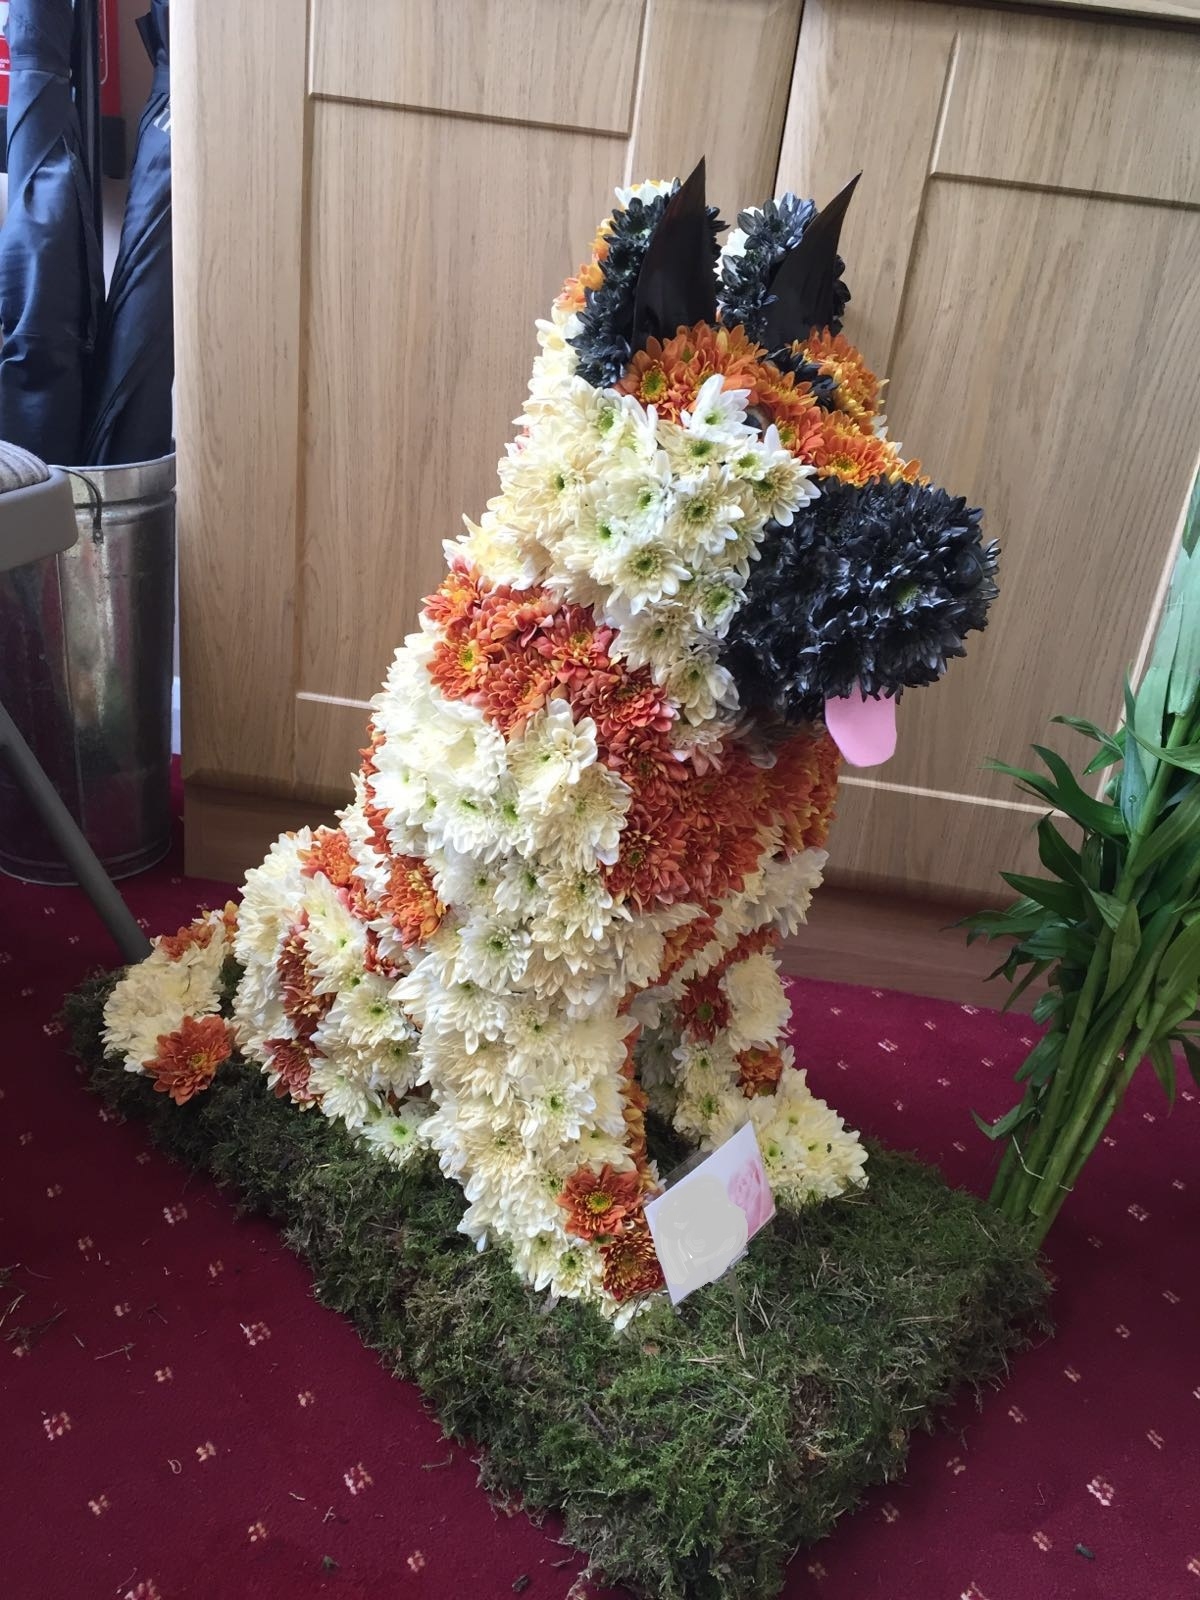 German Shepherd made from flowers